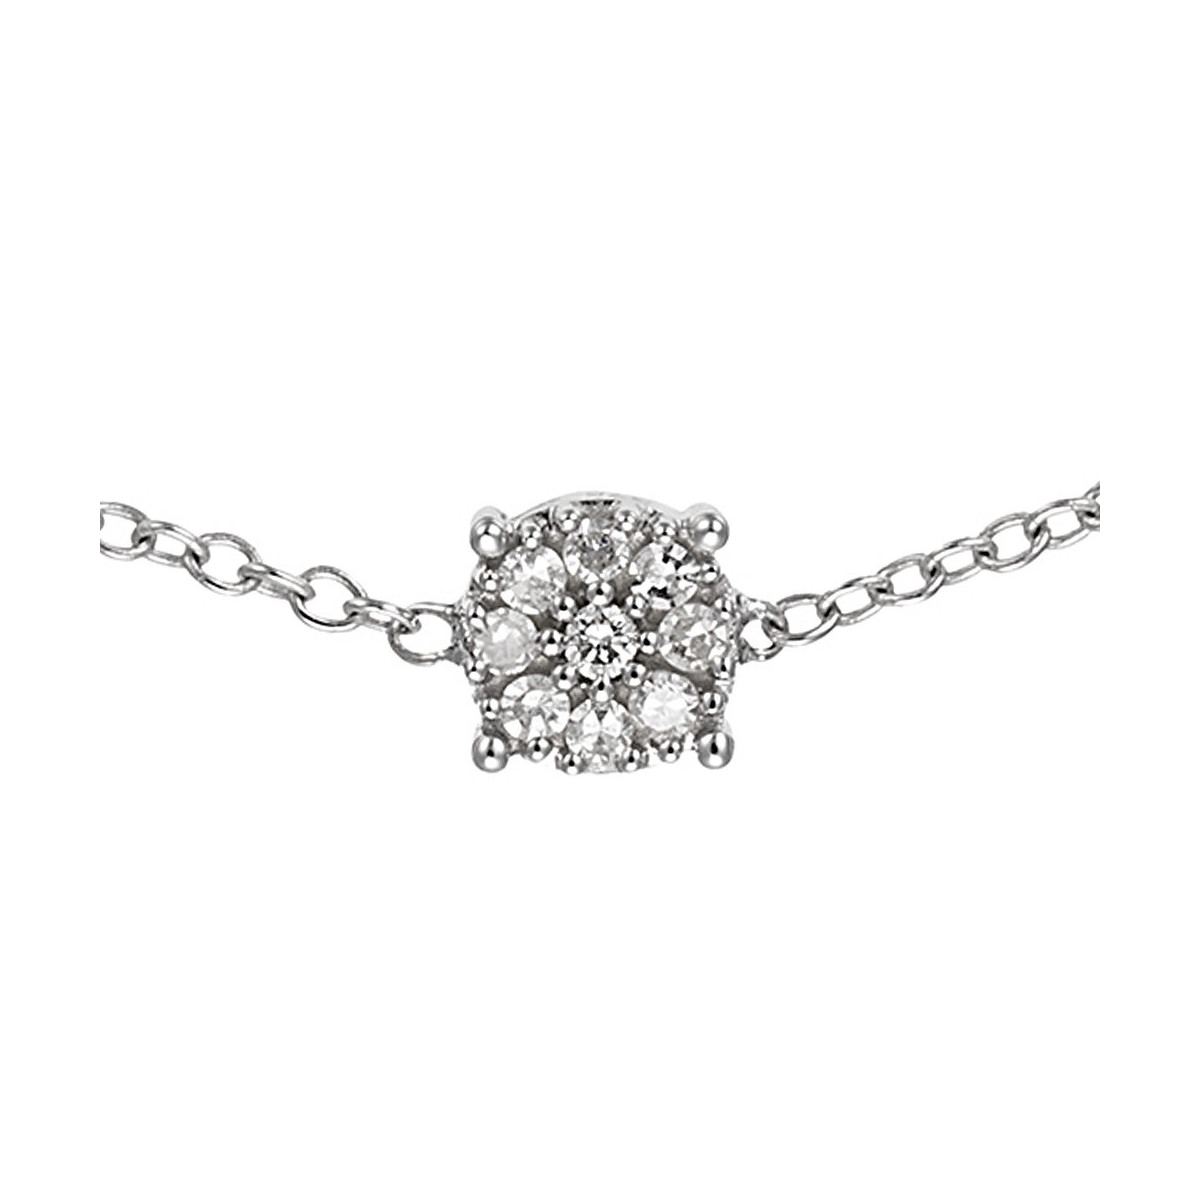 Bracelet Or Blanc et Diamants 0,05 carat "SIMPLY DIAMONDS"